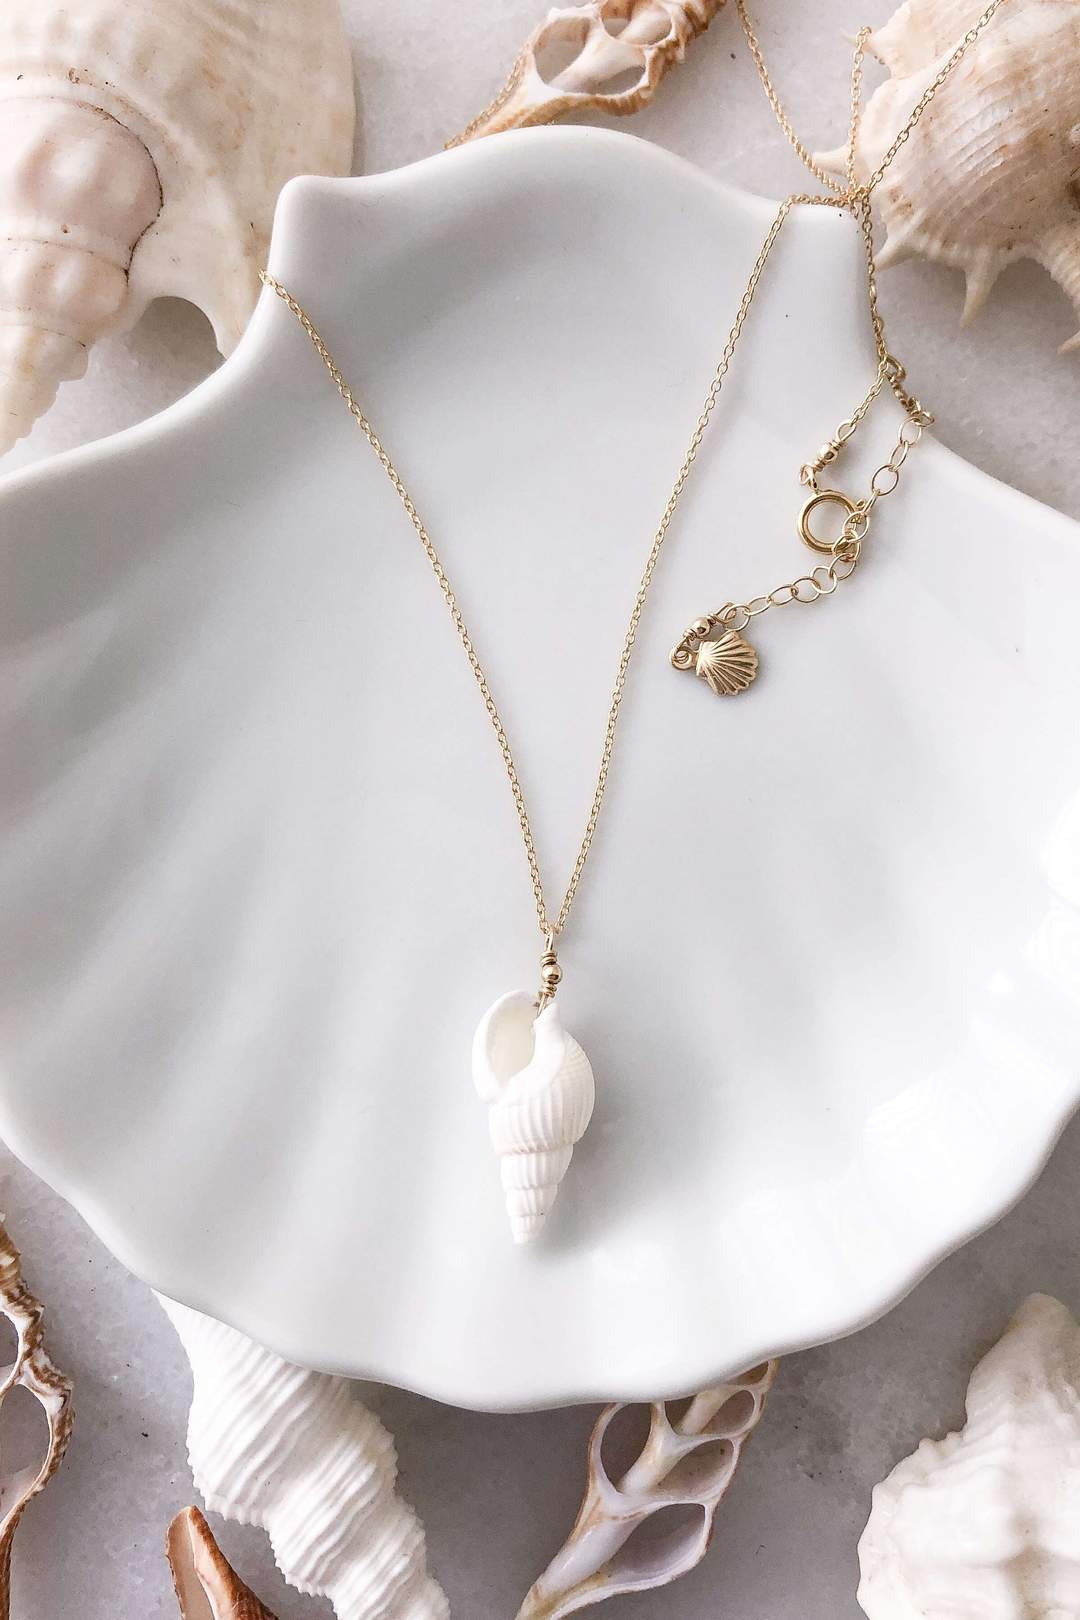 Copper Scallop Shell Necklace – Copperworkx